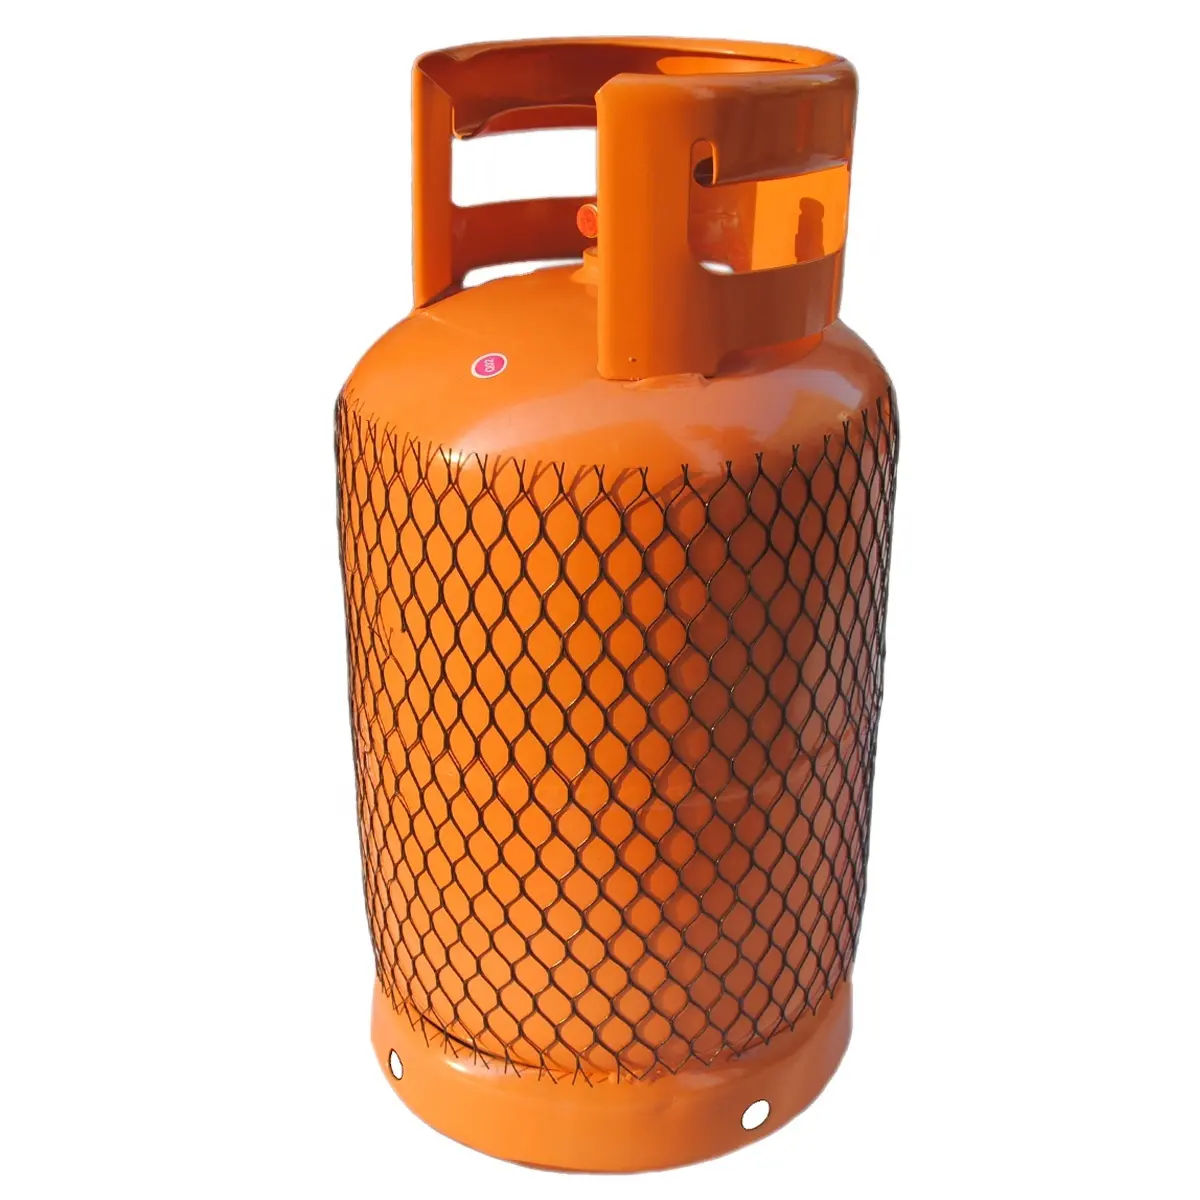 CNJG Nigeria — bouteille de gaz vide 12.5kg, cylindre de gaz gpl à usage domestique